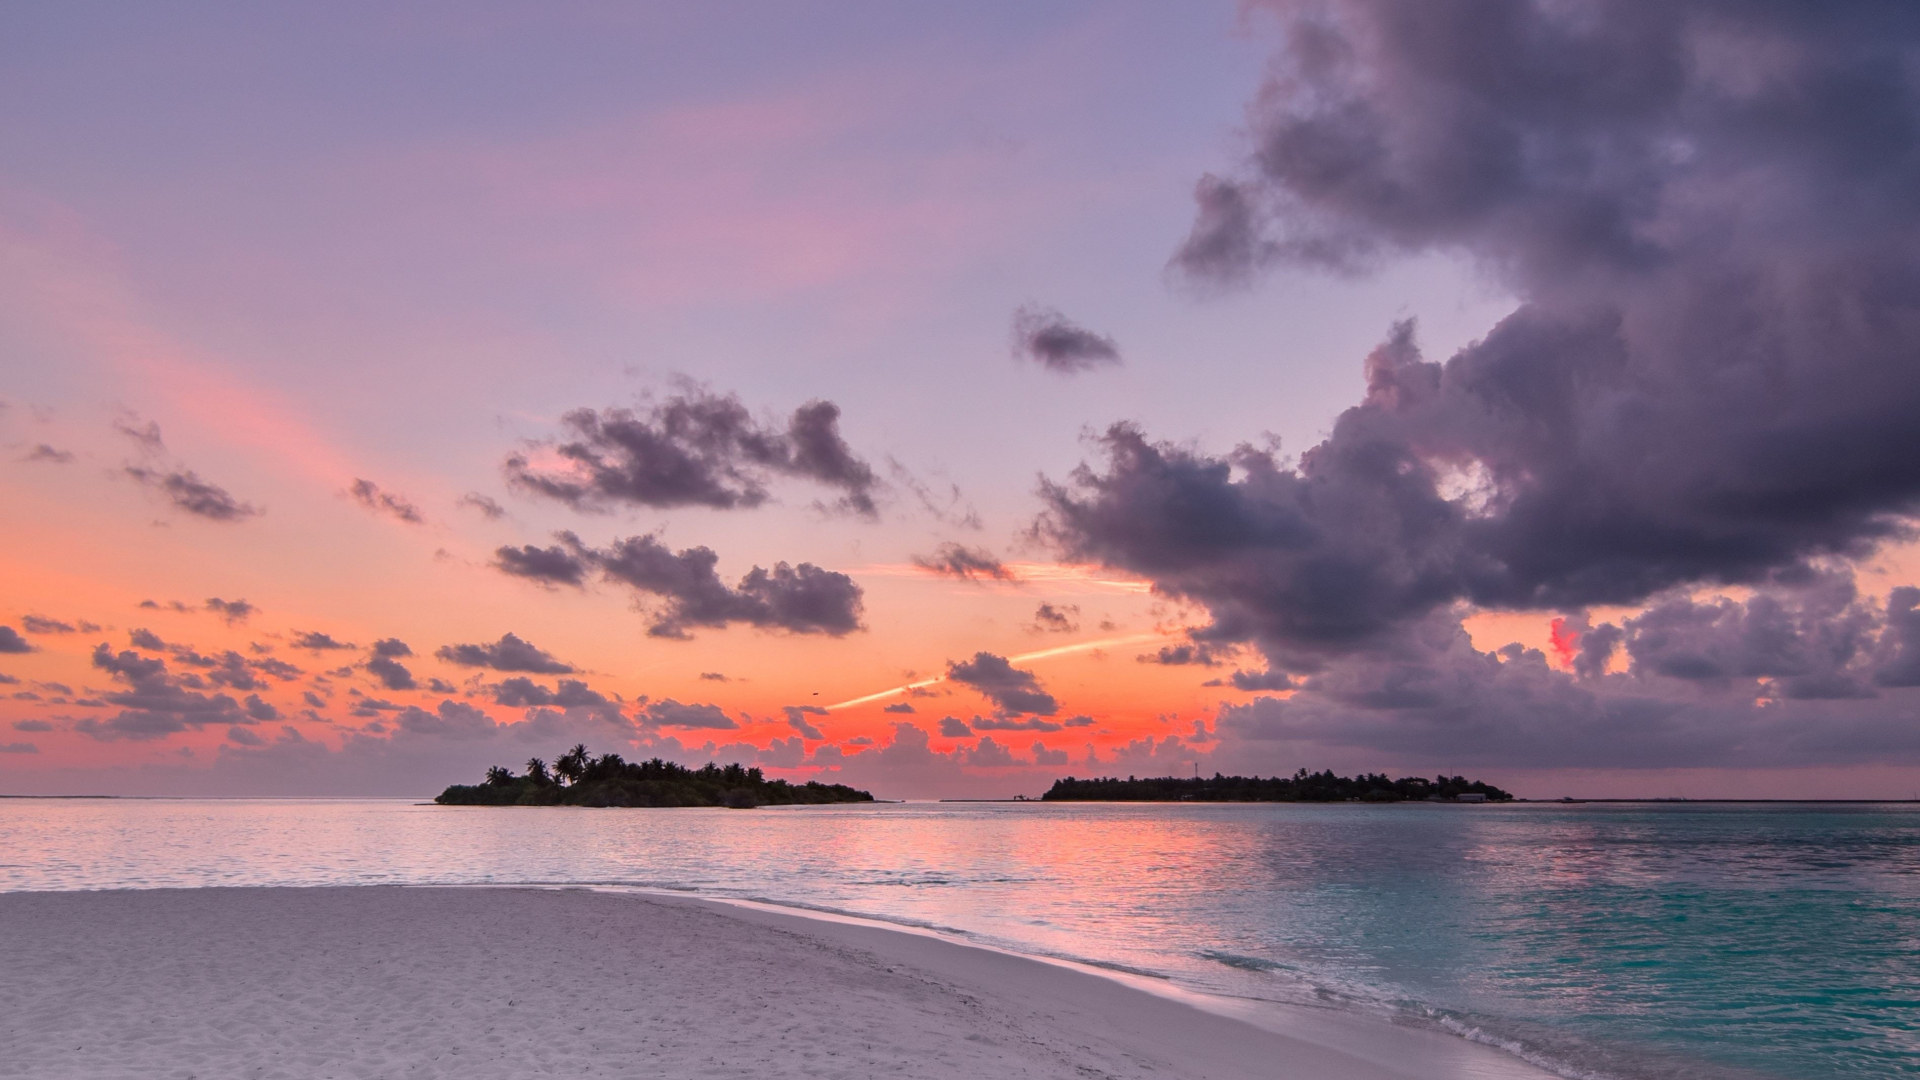 Download 1920x1080 wallpaper beach, island, sunset, clouds, nature